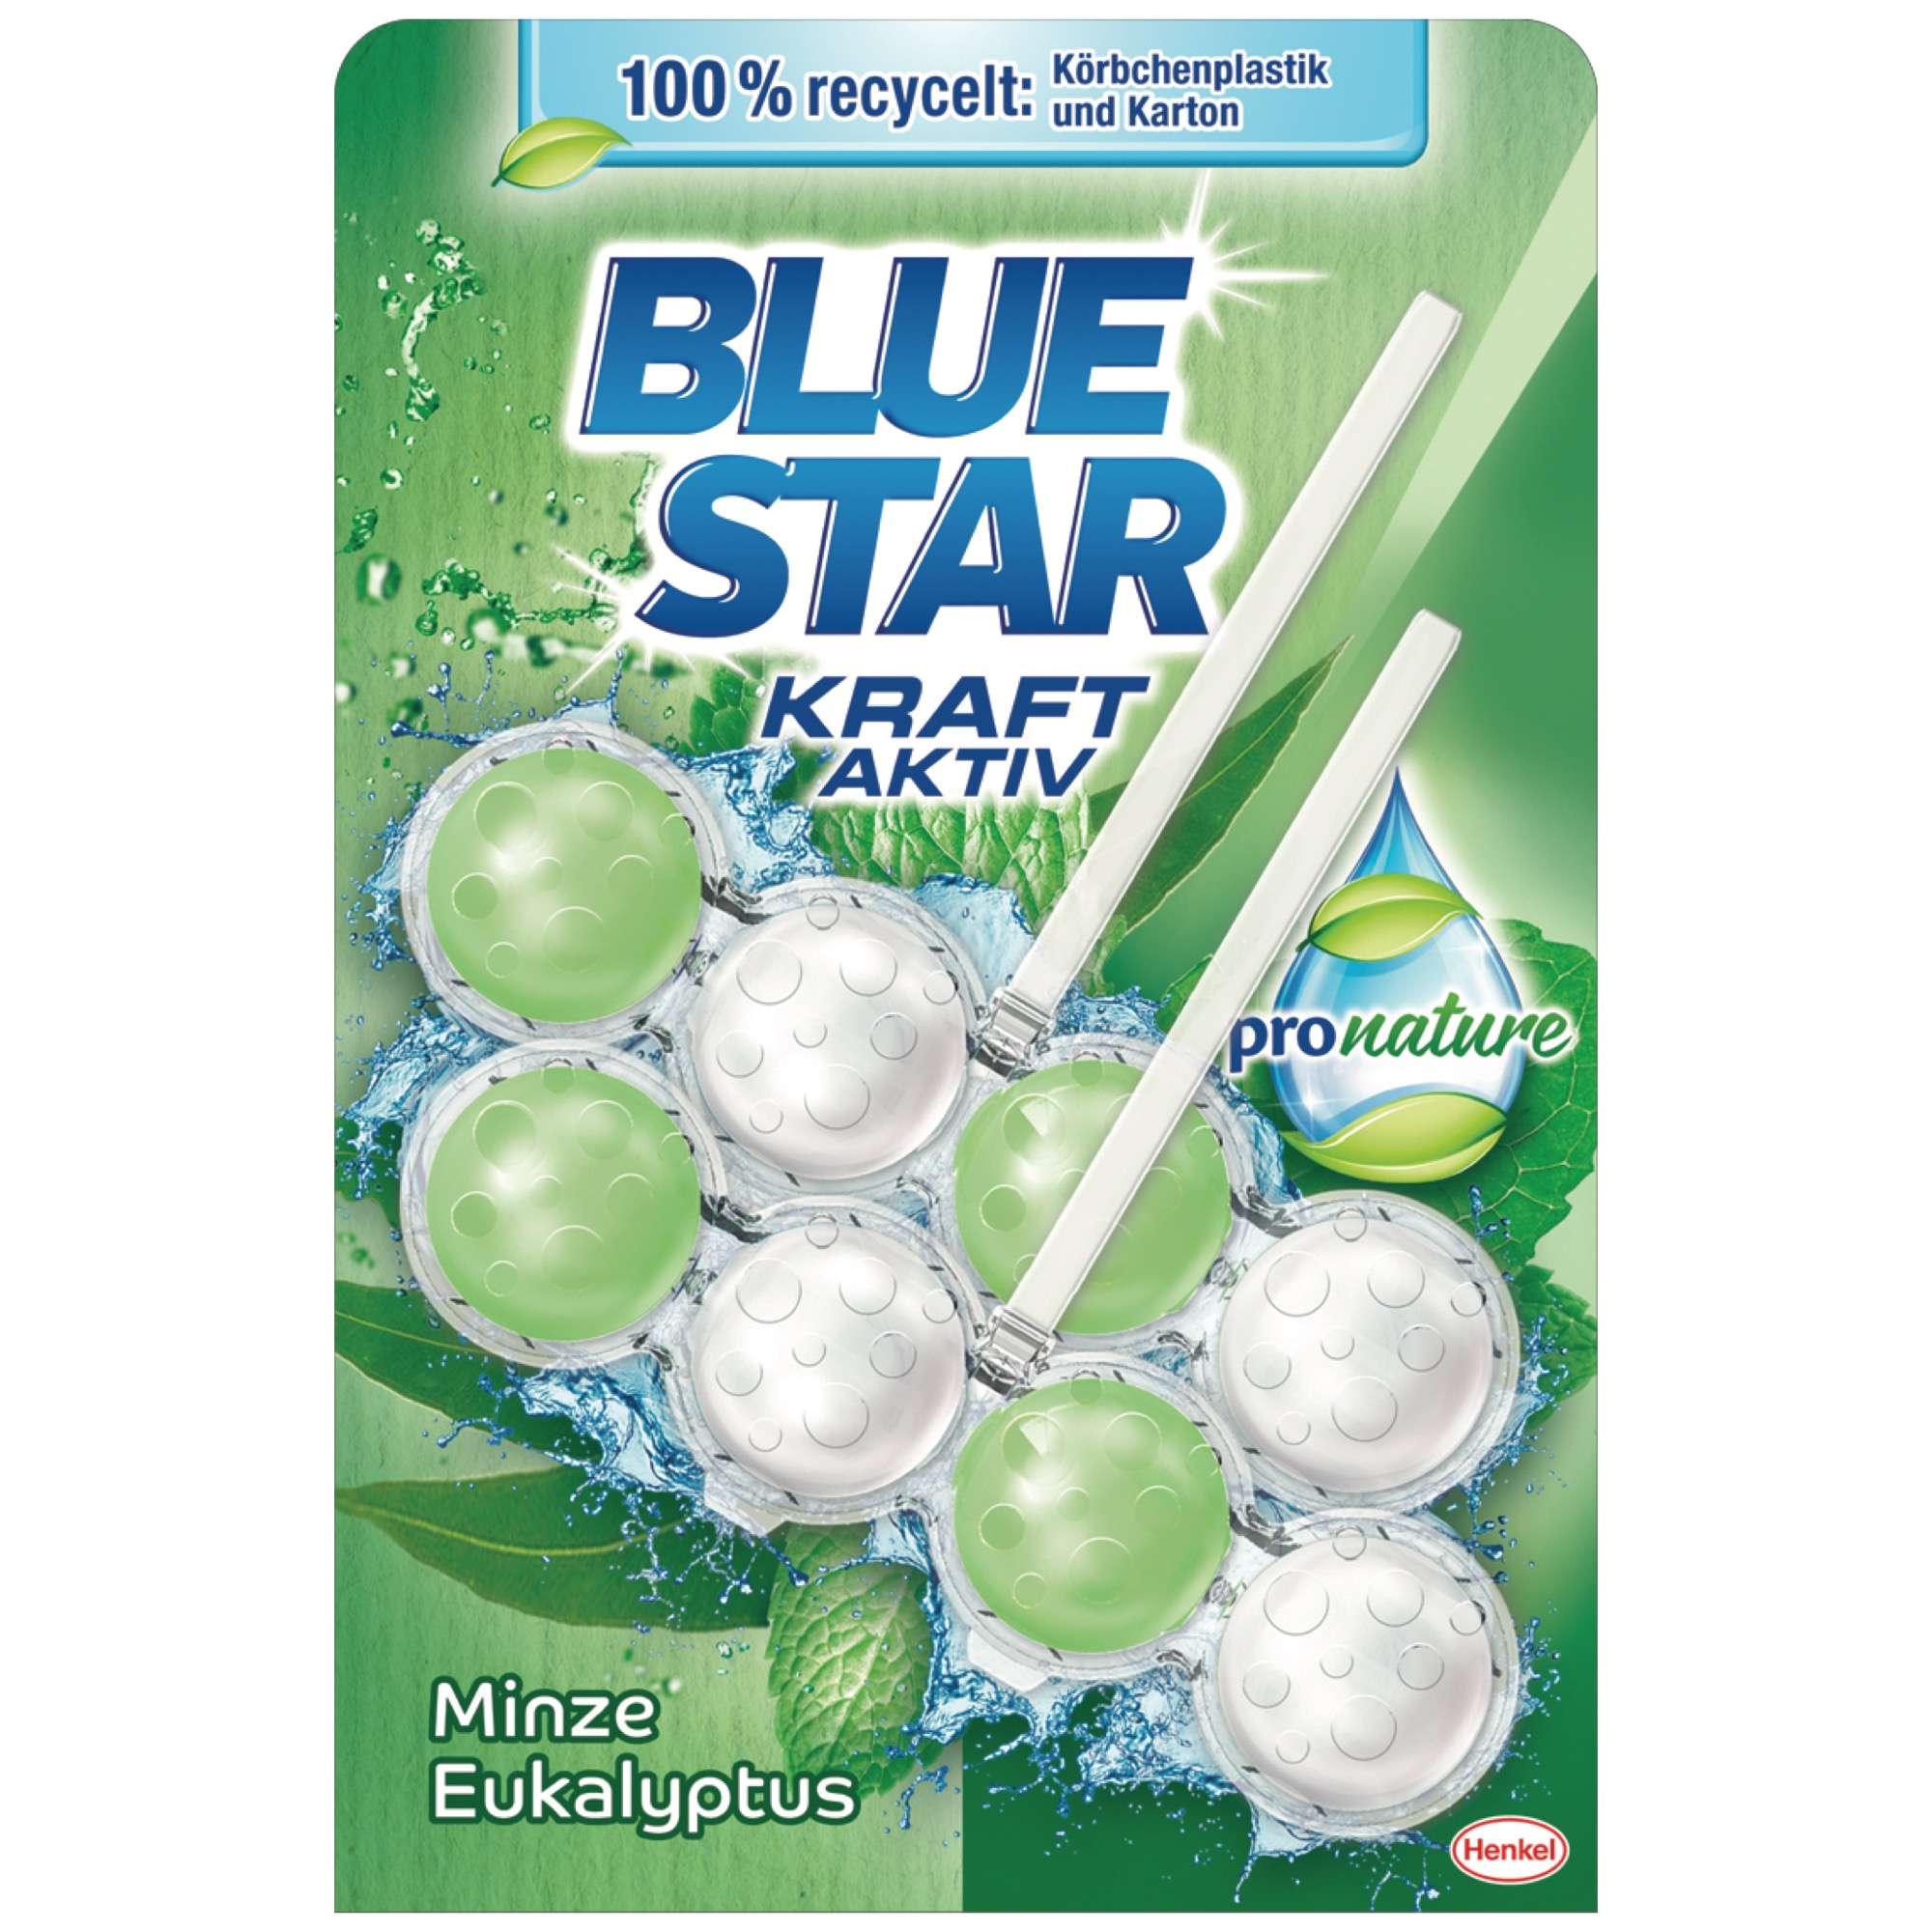 Blue Star Kraft Aktive VP, ProNat.mäta